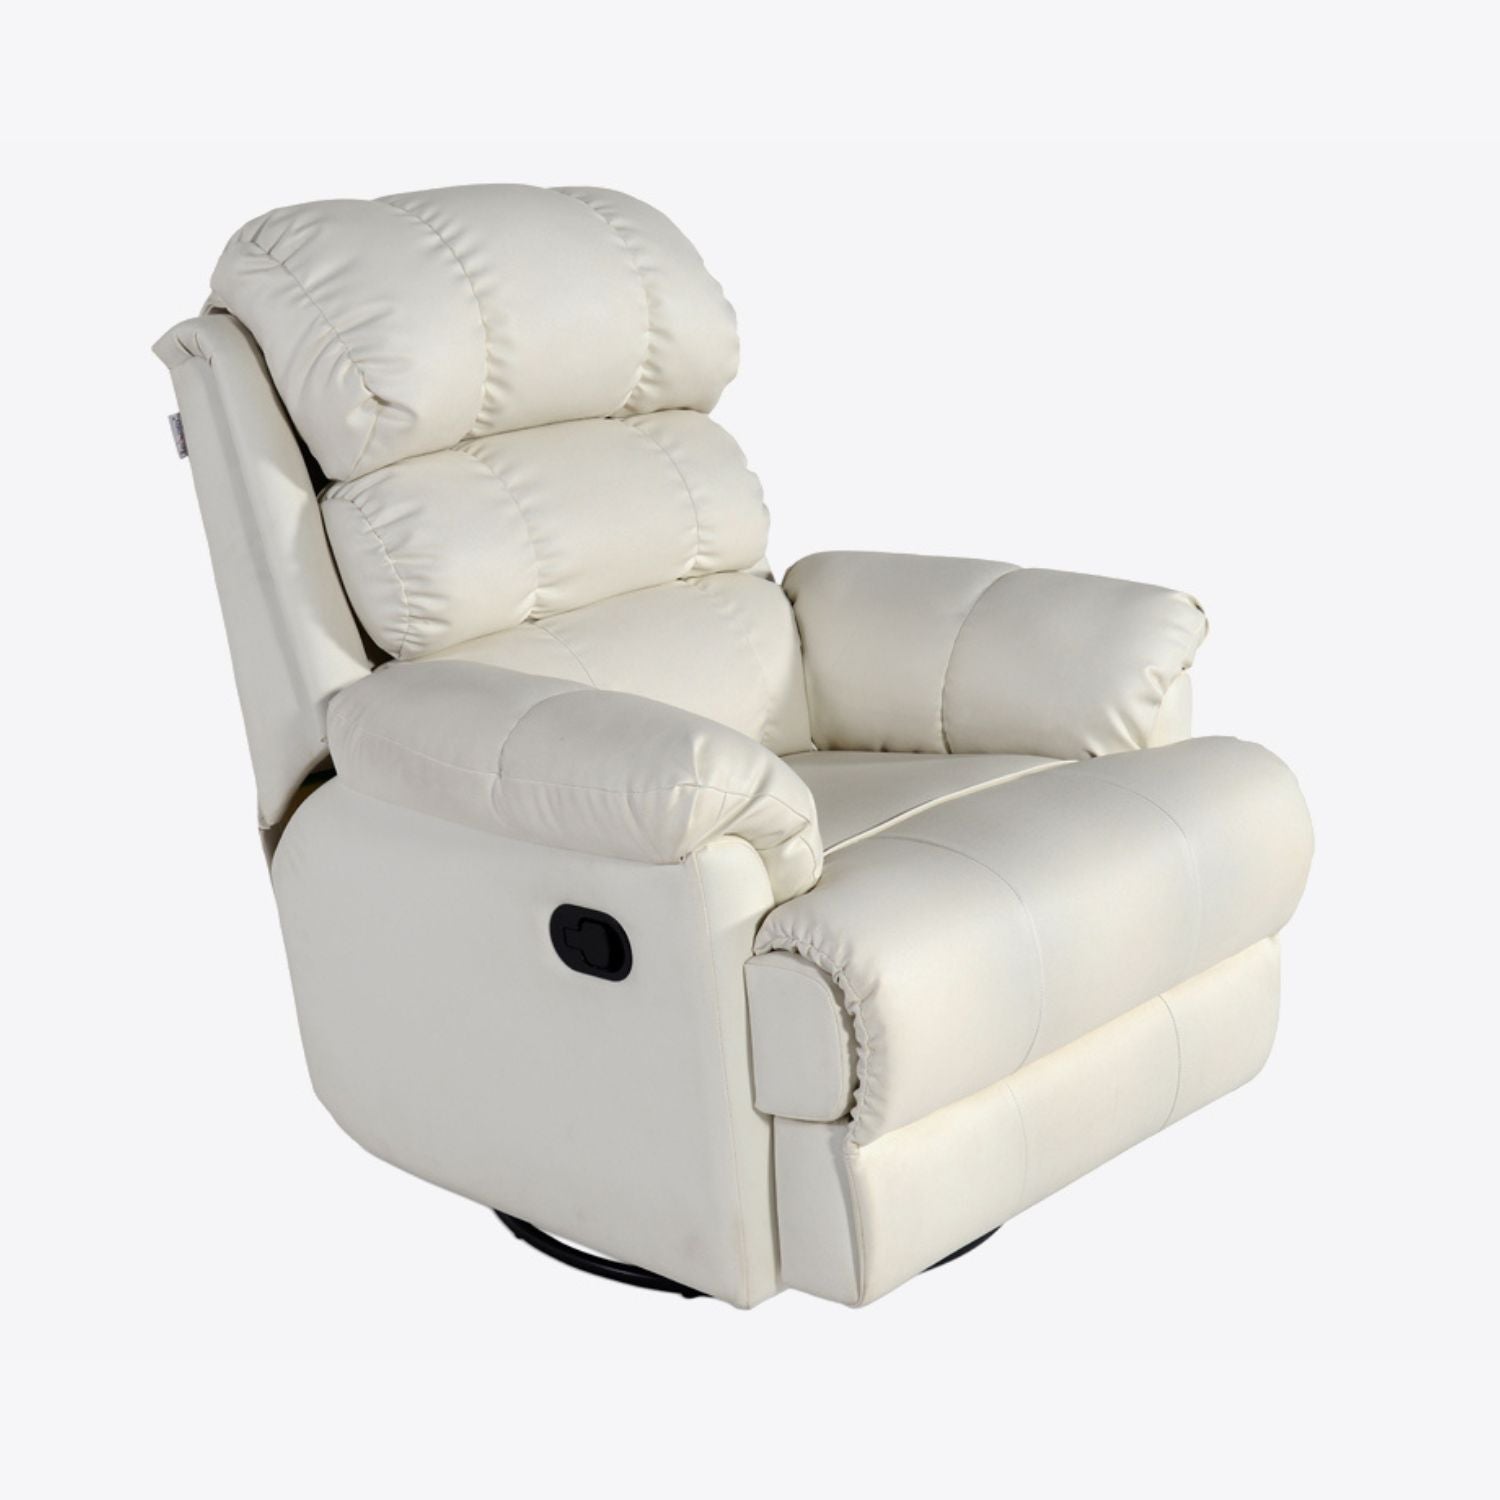 361 RECLINER CHAIR - MANUAL Mobel Furniture